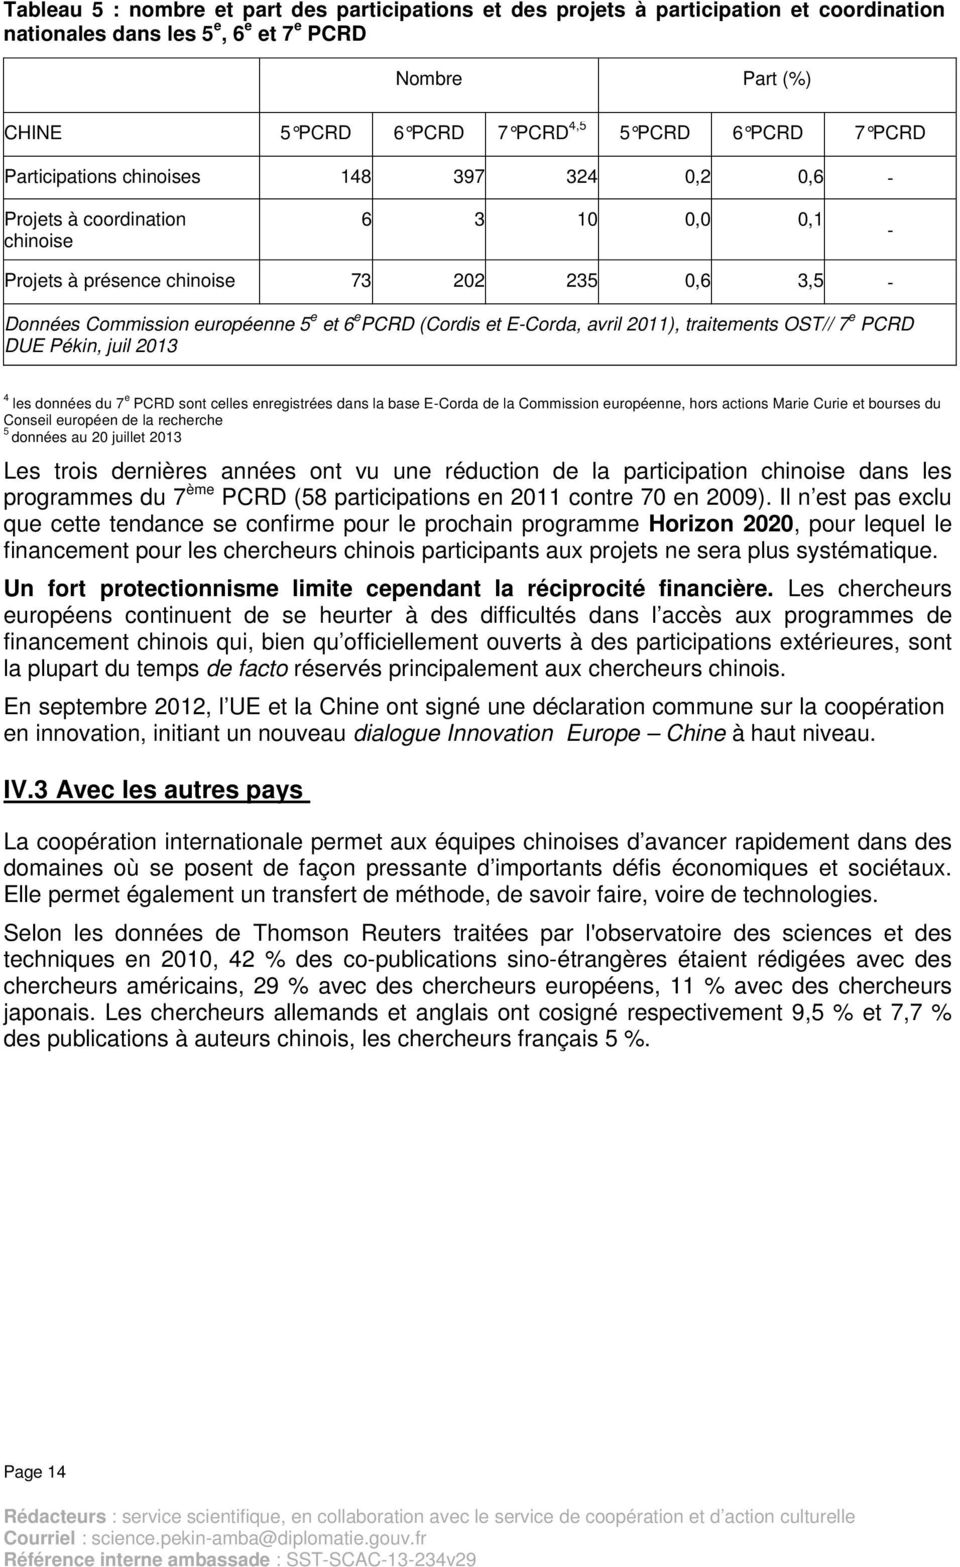 (Cordis et E-Corda, avril 2011), traitements OST// 7 e PCRD DUE Pékin, juil 2013 4 les données du 7 e PCRD sont celles enregistrées dans la base E-Corda de la Commission européenne, hors actions